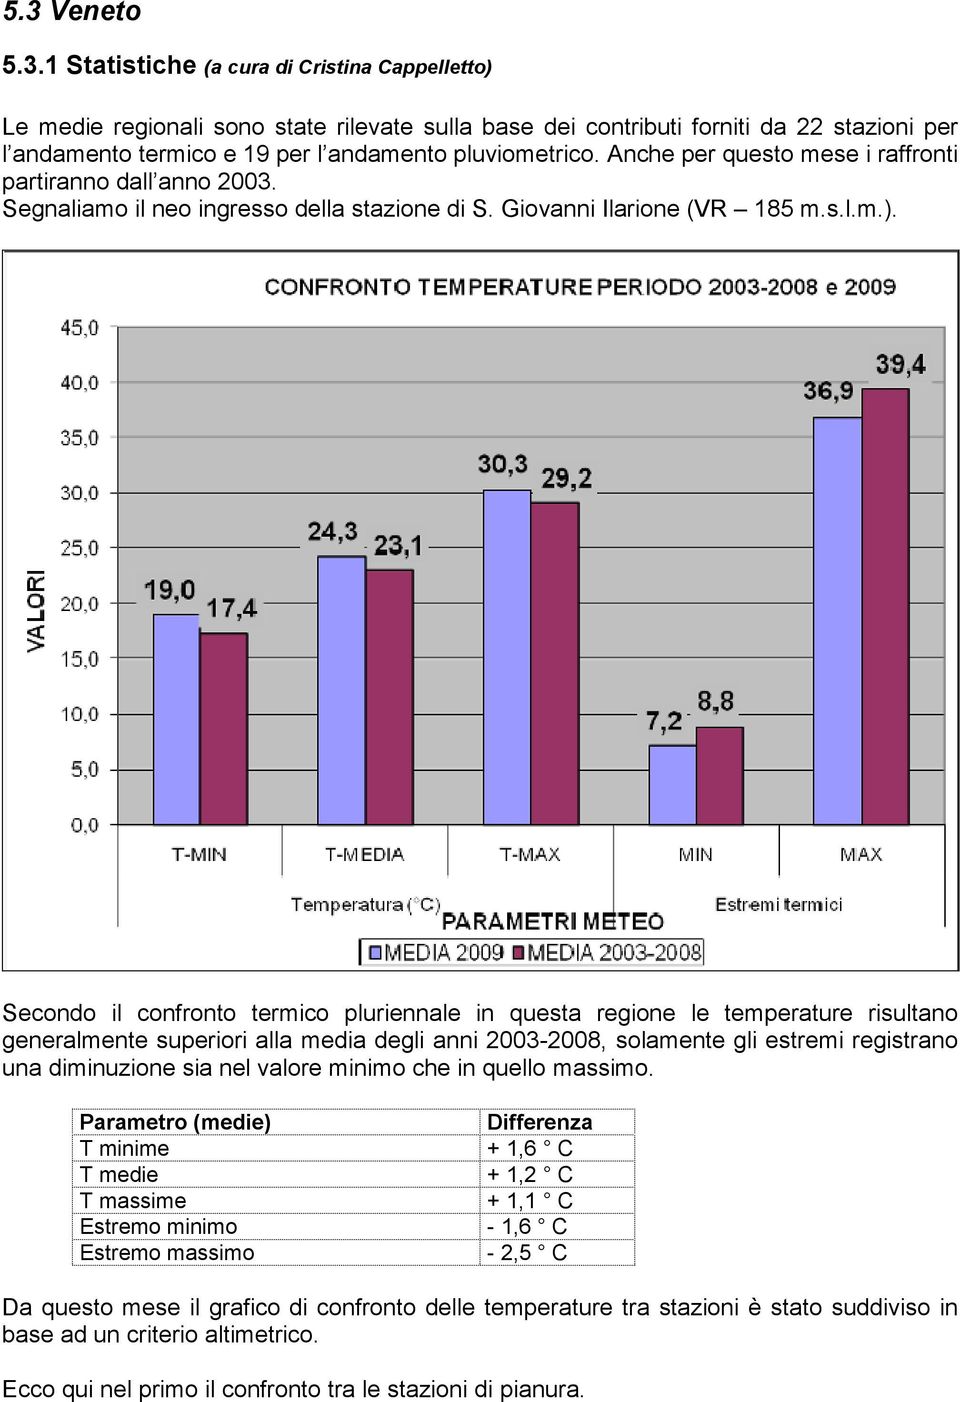 Secondo il confronto termico pluriennale in questa regione le temperature risultano generalmente superiori alla media degli anni 2003-2008, solamente gli estremi registrano una diminuzione sia nel